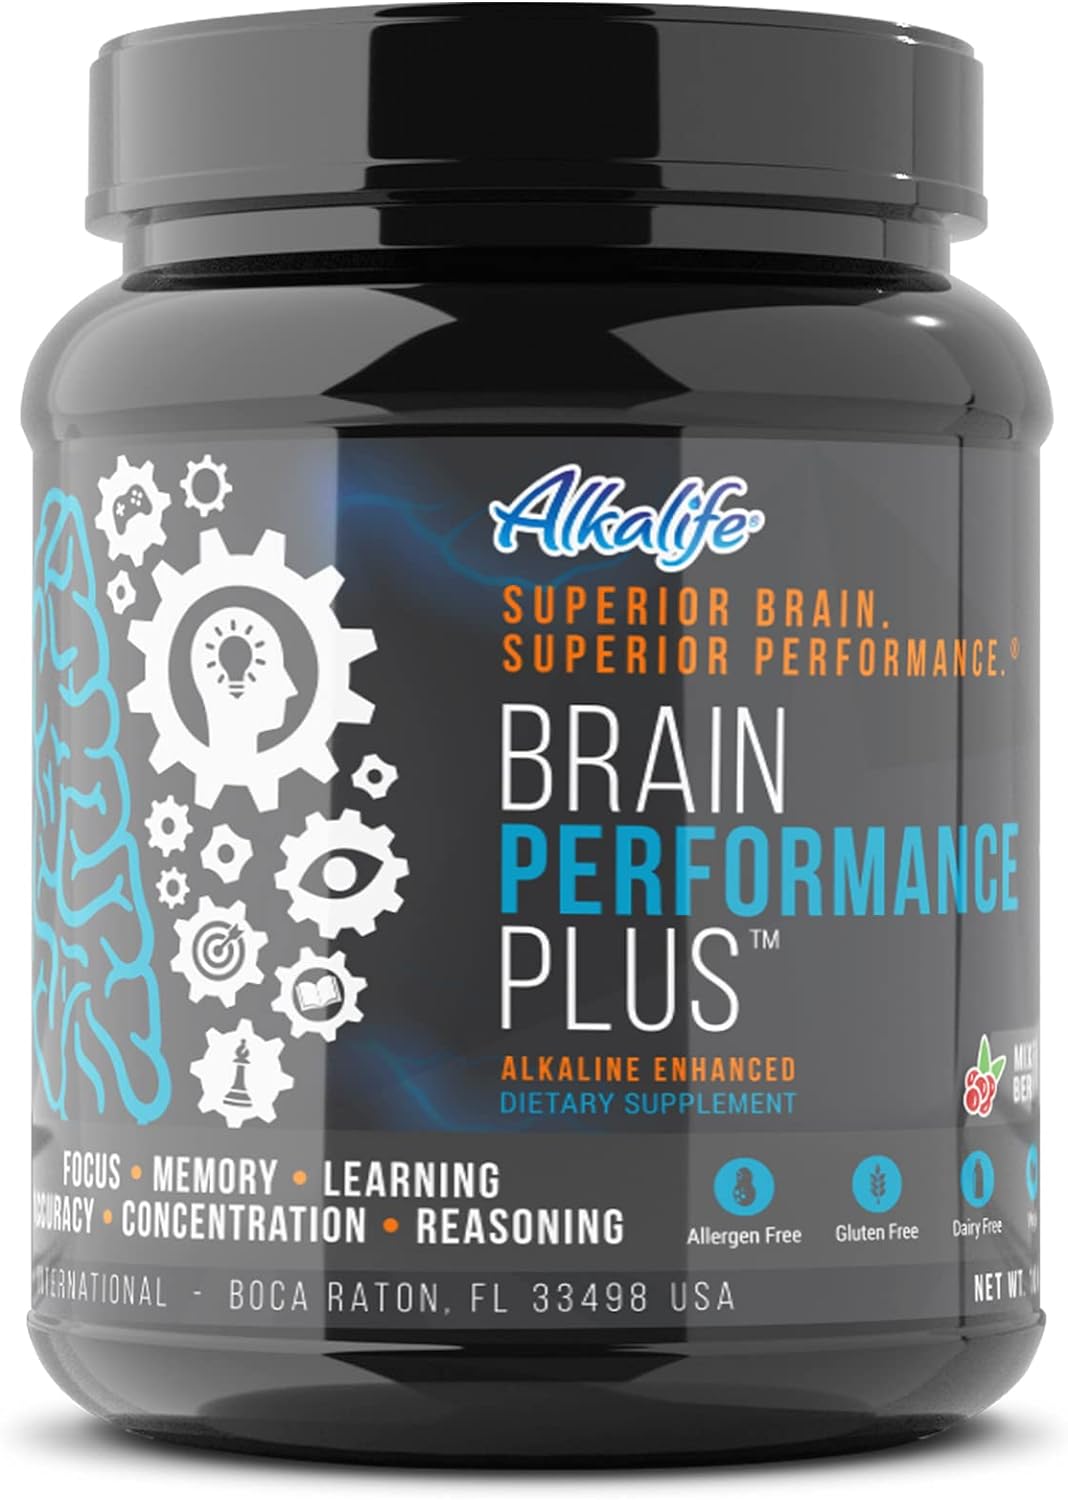 Alkalife Brain Performance Plus – First Alkaline Enhancing N